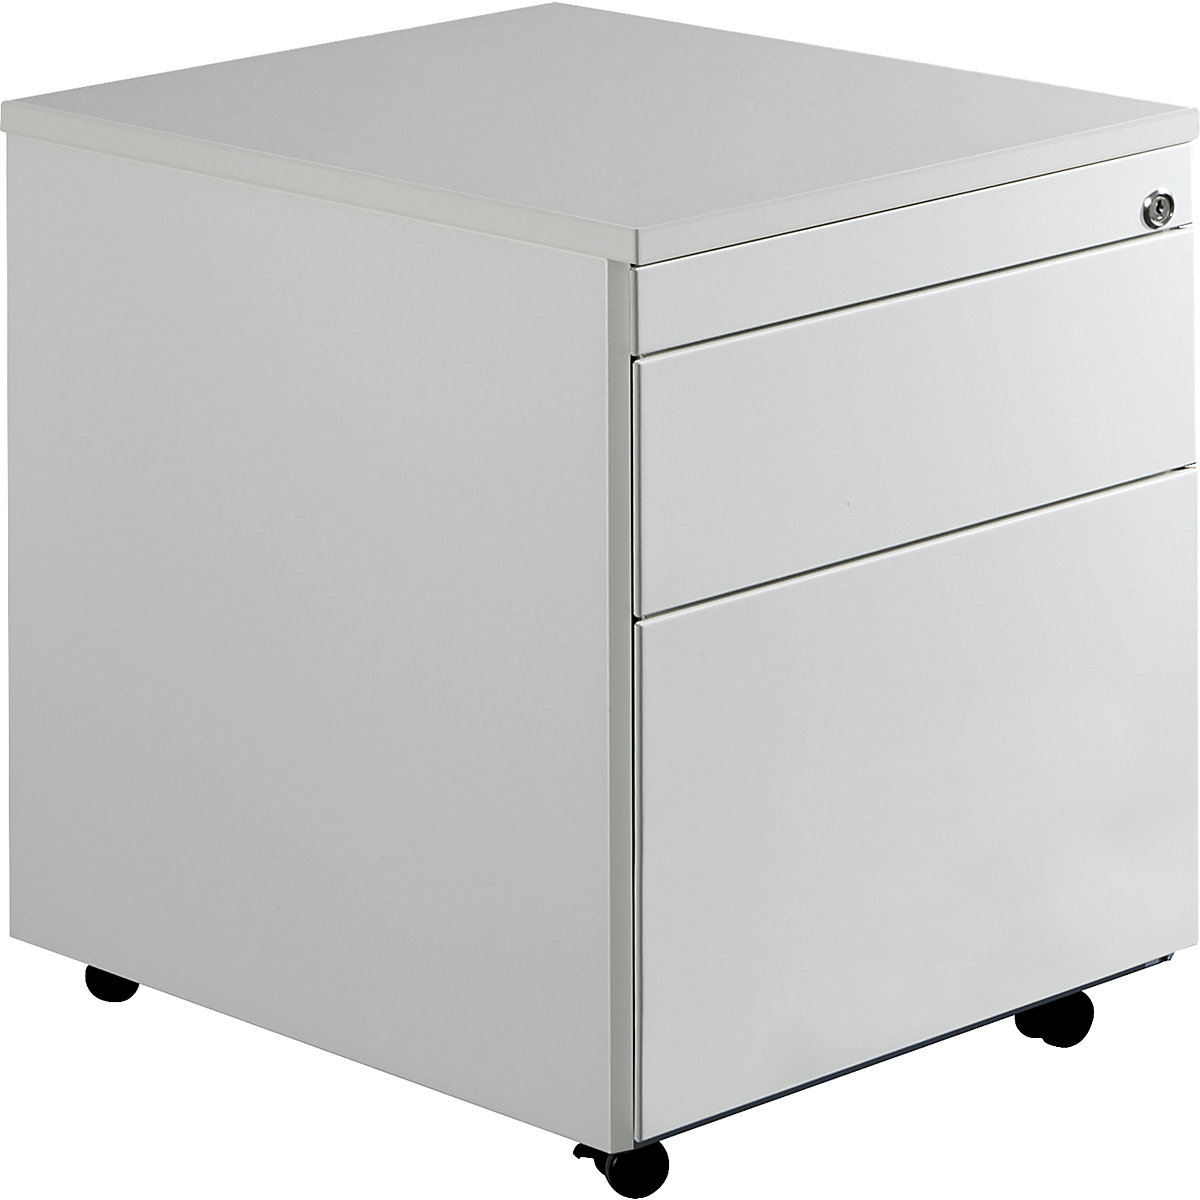 Drawer pedestal with castors – mauser, HxD 579 x 600 mm, 1 drawer, 1 suspension file drawer, light grey / light grey / light grey-3